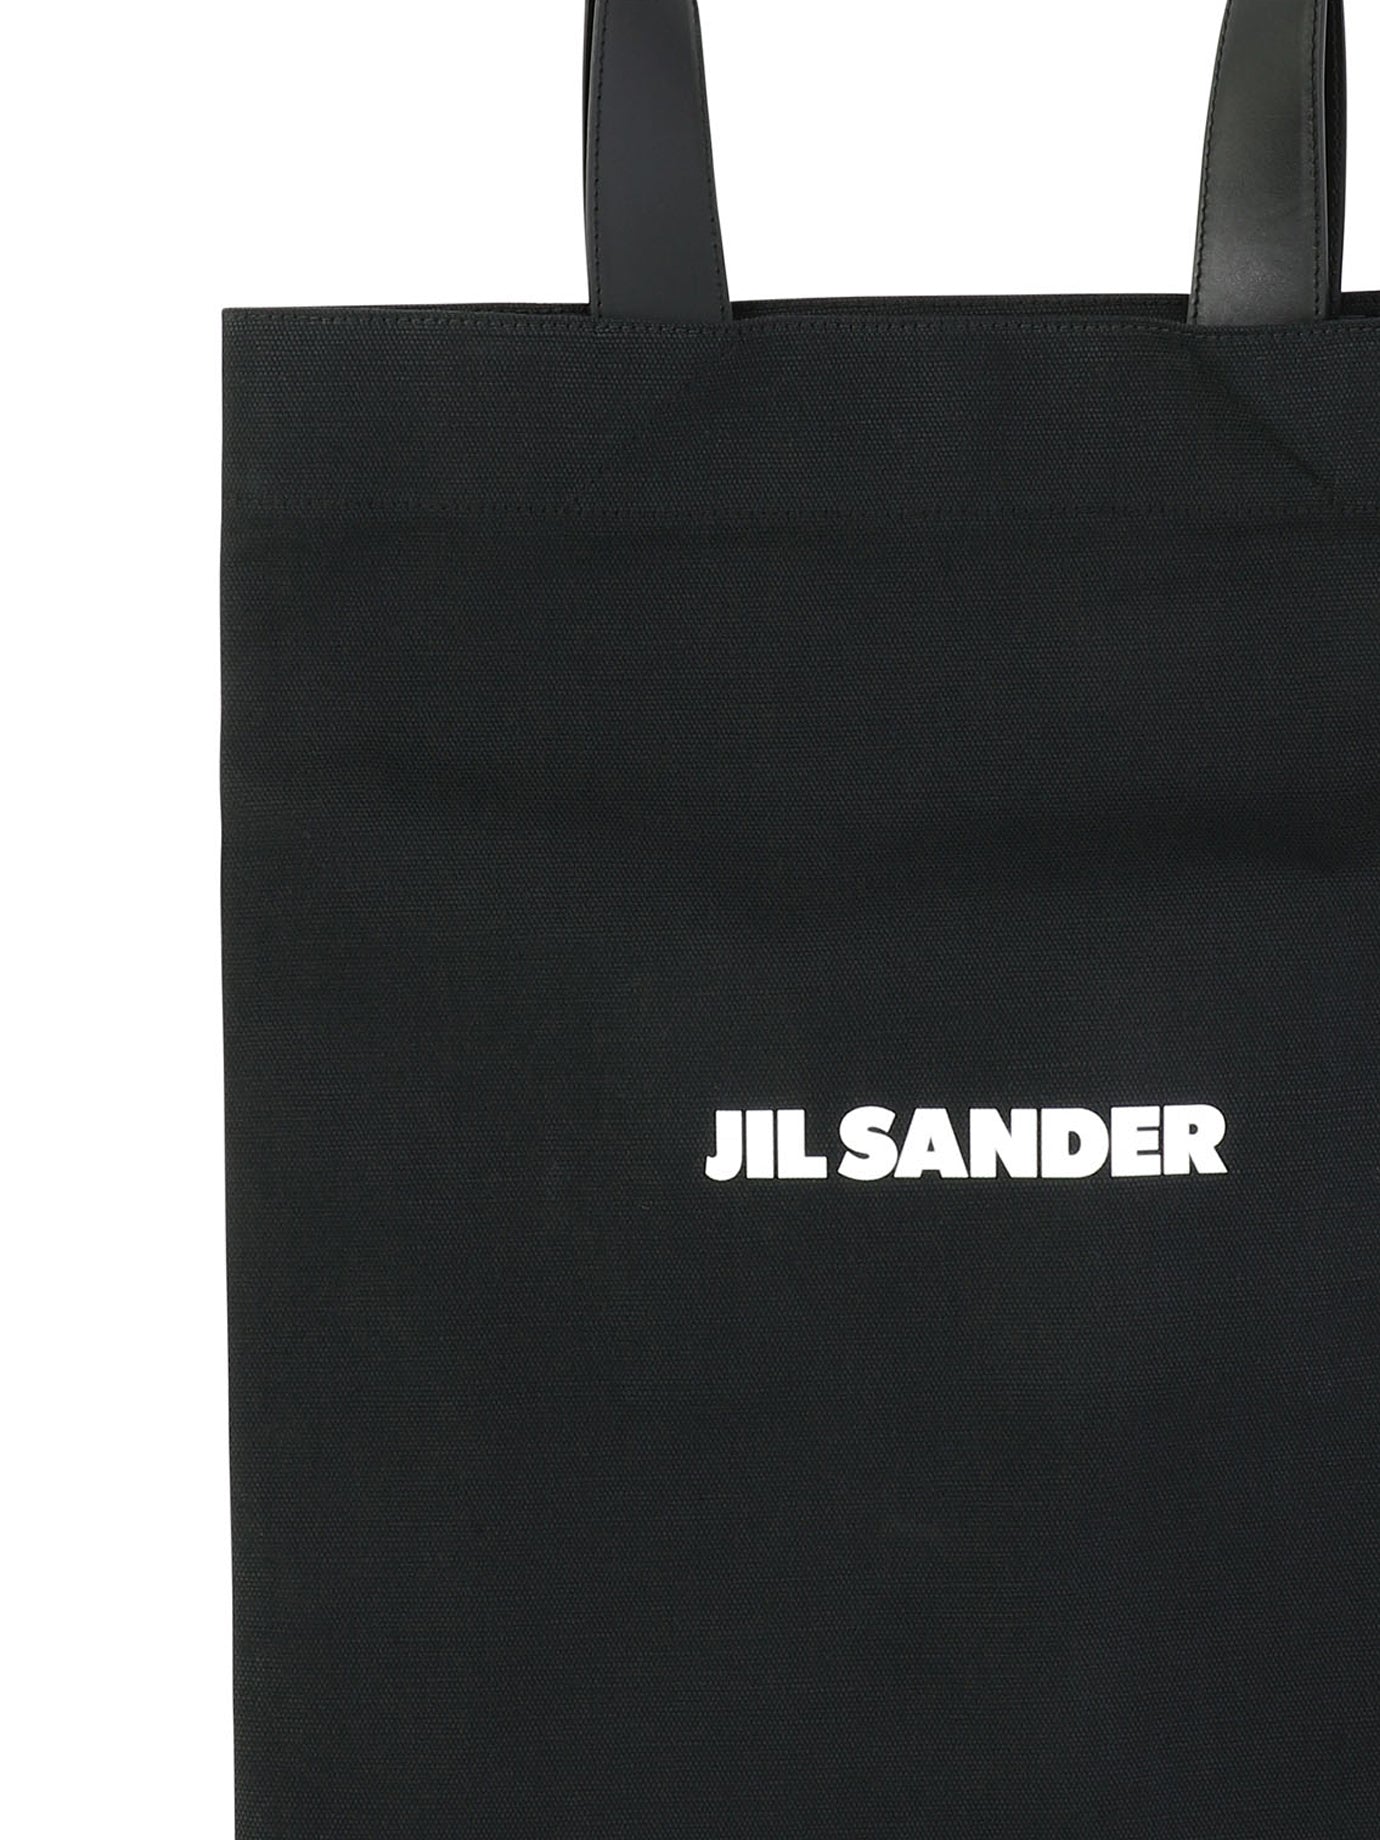 Shop Jil Sander Tote Handbag With Logo For Men In Black